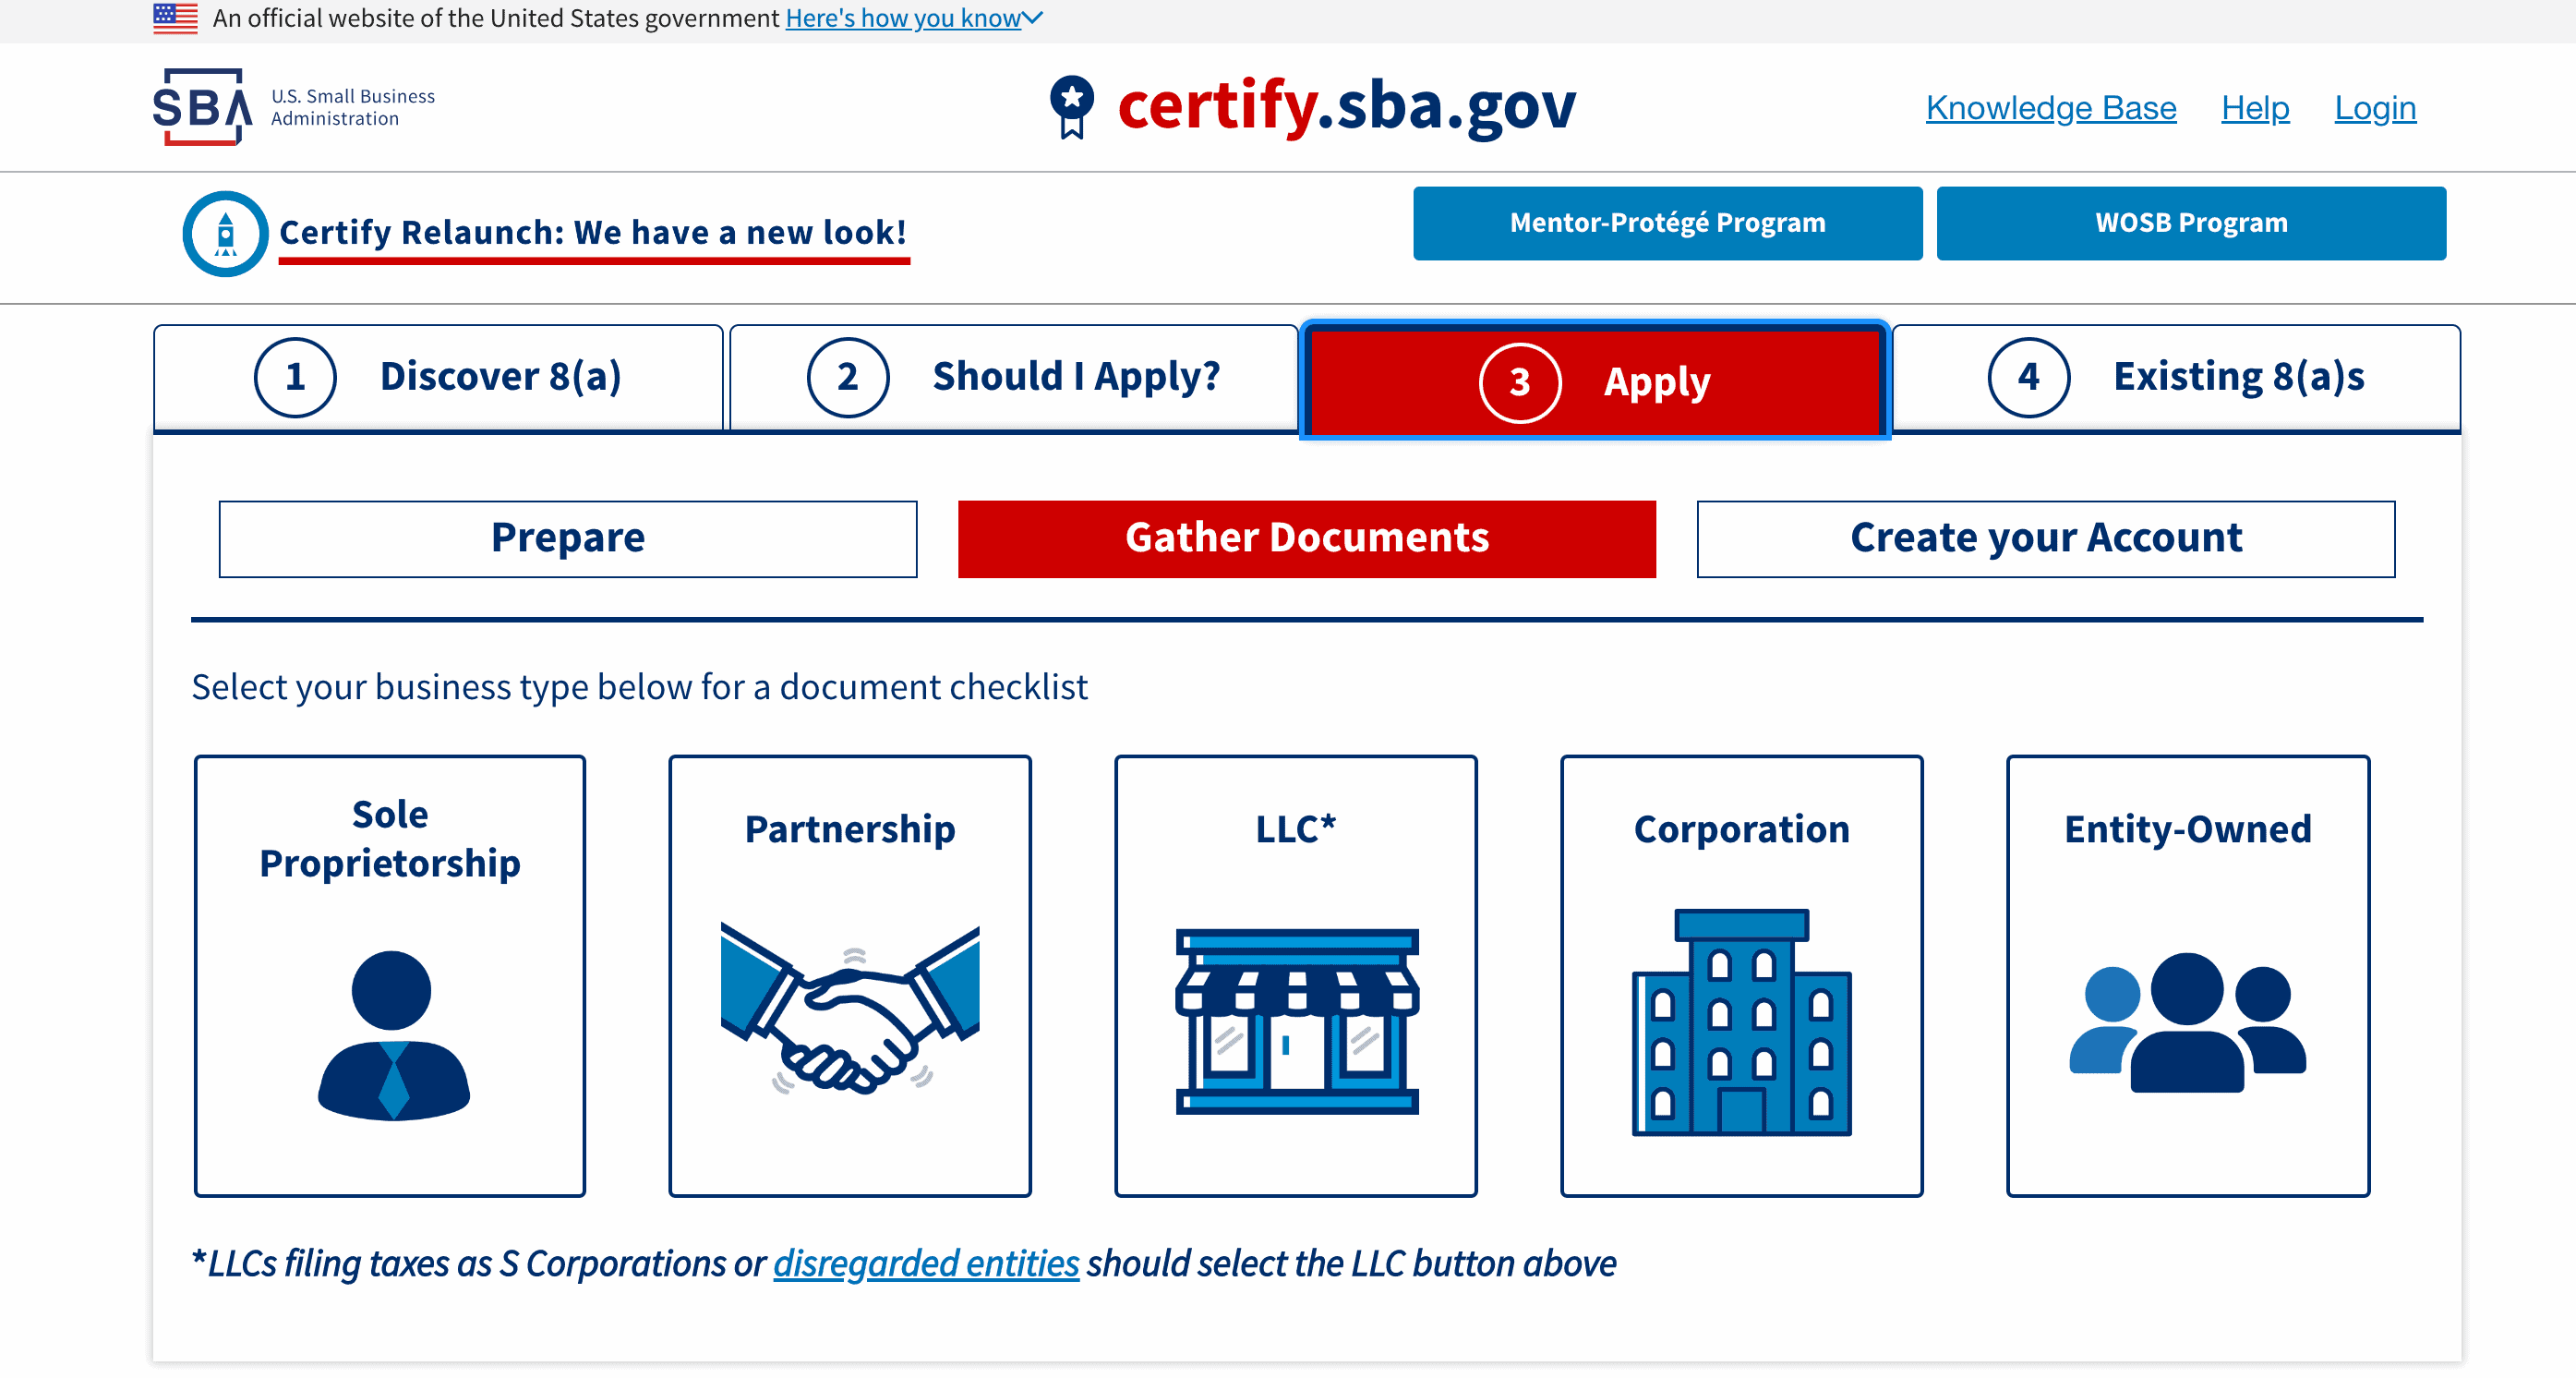 SBA Certify website screenshot